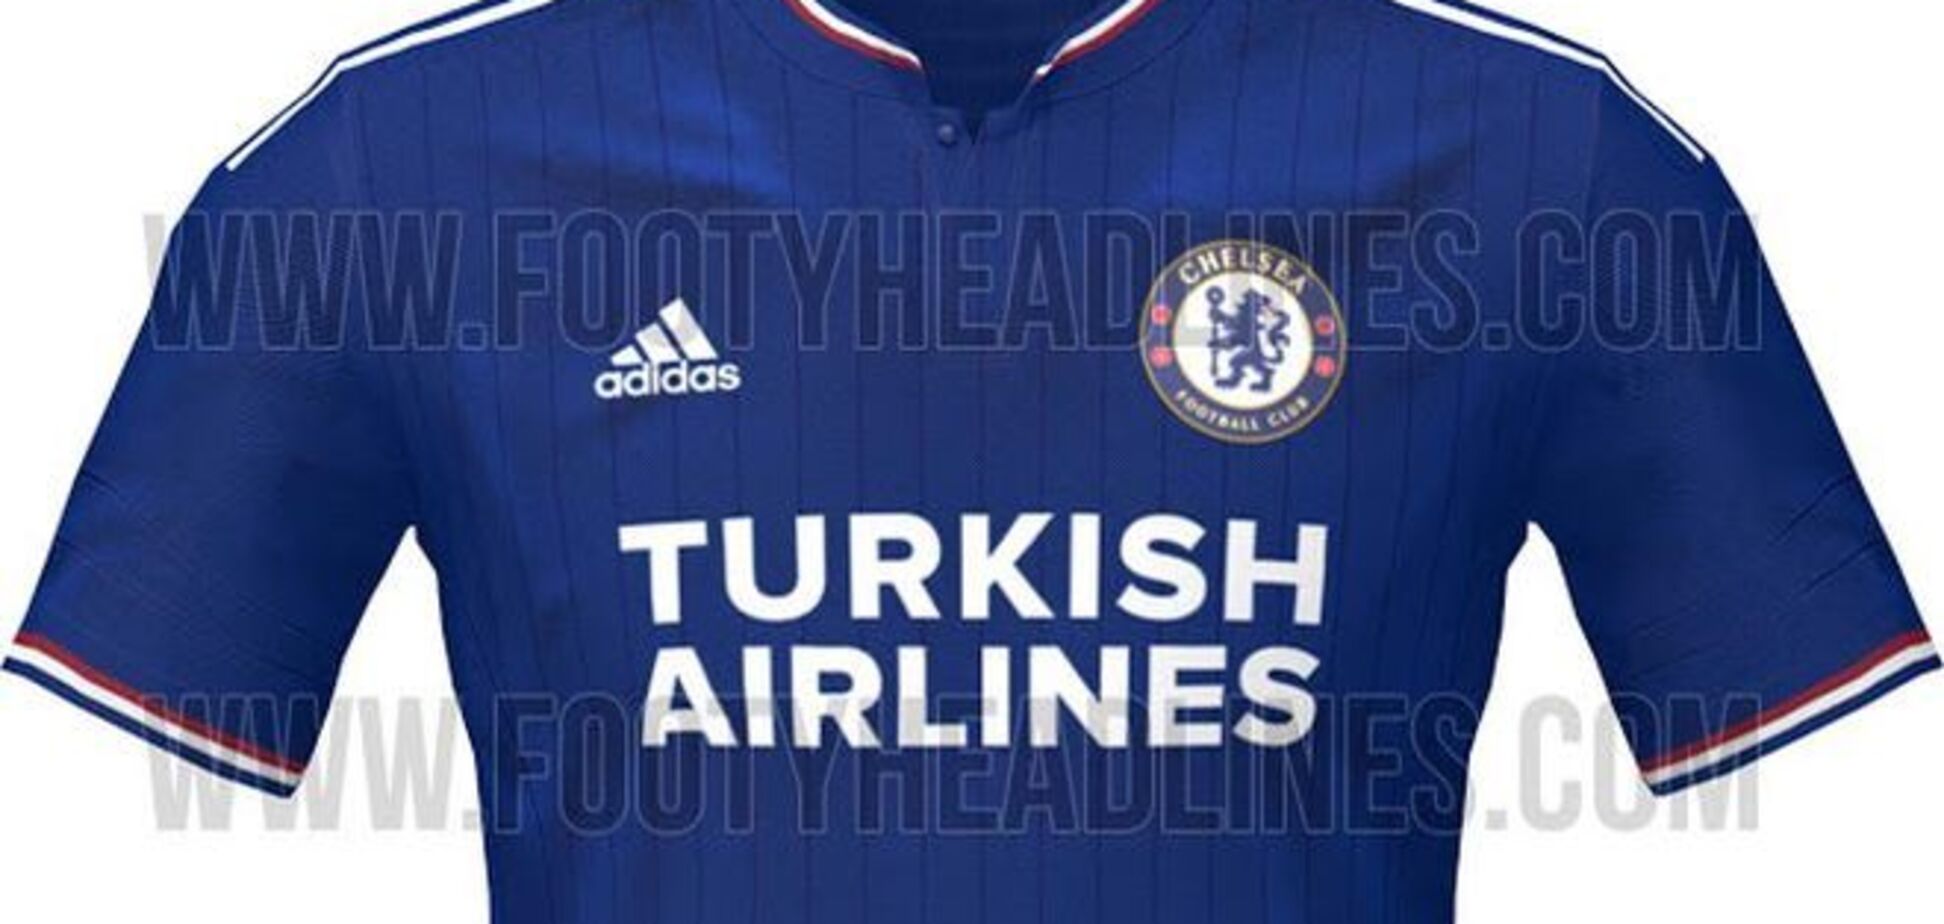 'Челсі' представив нову 'турецьку' форму